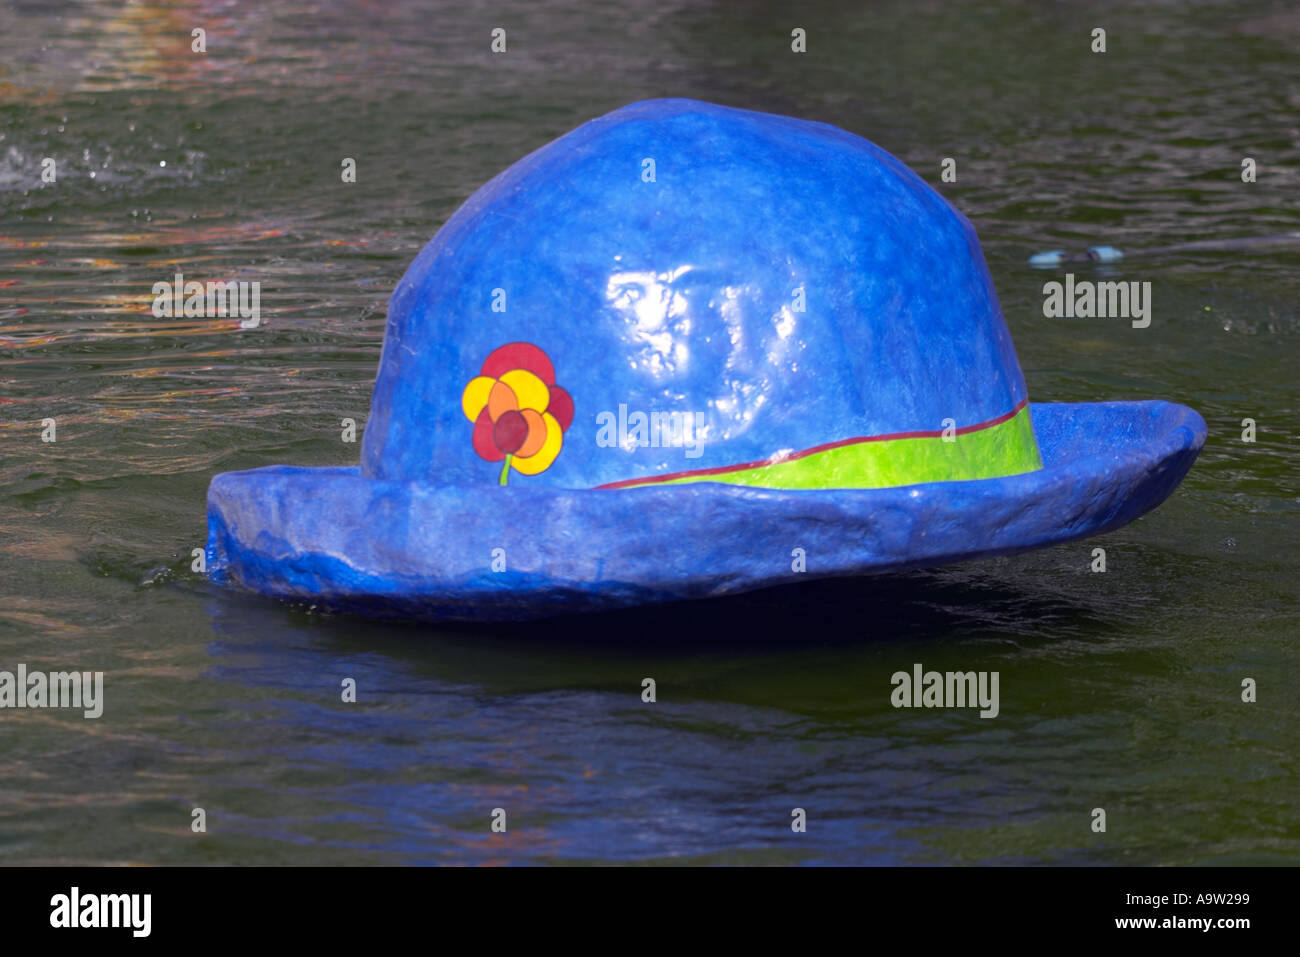 Le Chapeau de Clown (the clown's hat), Fontaine Igor Stravinsky, Paris, France Stock Photo